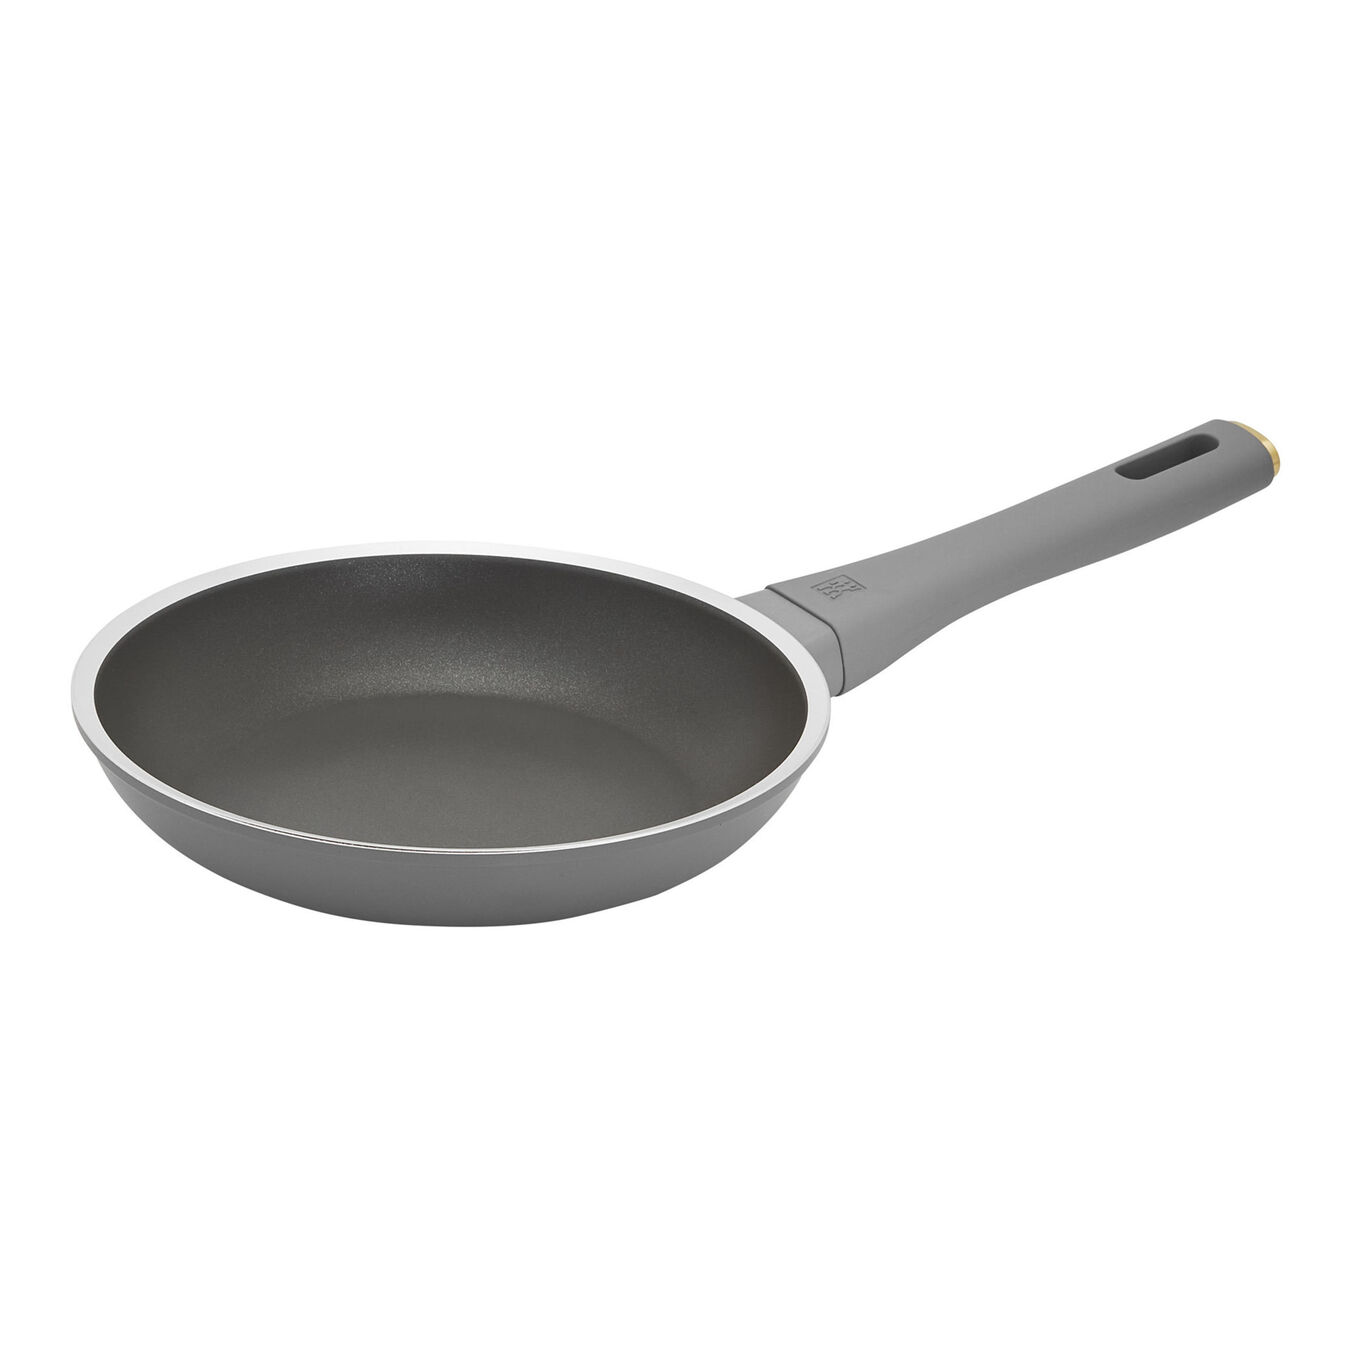 20 cm / 8 inch aluminium Frying pan,,large 1